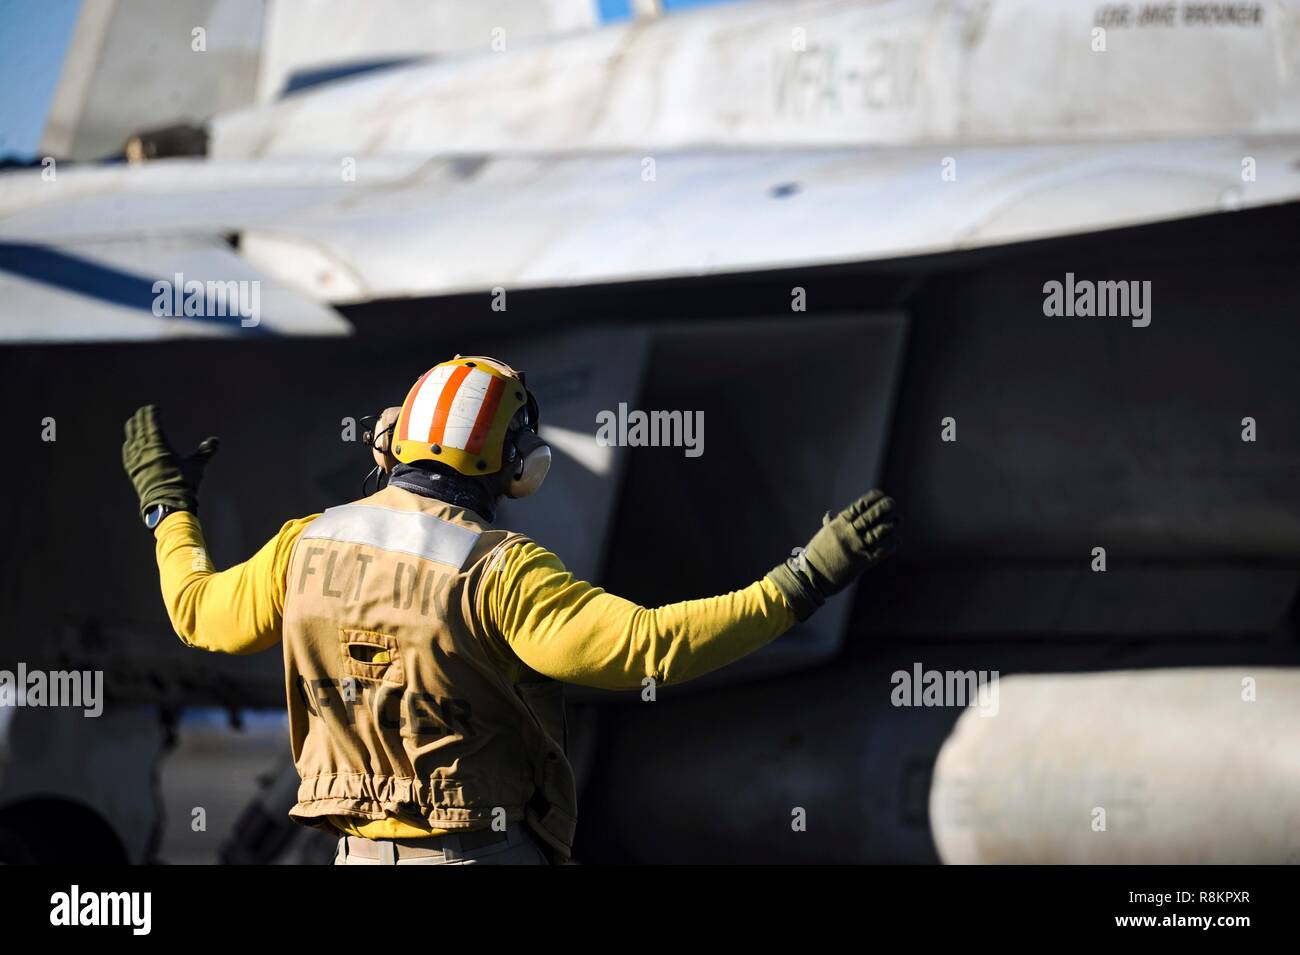 Un directeur de vol dans une chemise jaune, le signal d'un F/A-18 Super Hornet à bord du porte-avions de classe Nimitz USS Harry S. Truman le 7 décembre 2018 dans l'océan Atlantique. Chemises jaunes sont portés par les gestionnaires d'aéronefs Aéronefs, administrateurs, officiers et catapulte Agents Arrêt considéré comme le plus difficile et important travail sur le poste de pilotage. Banque D'Images